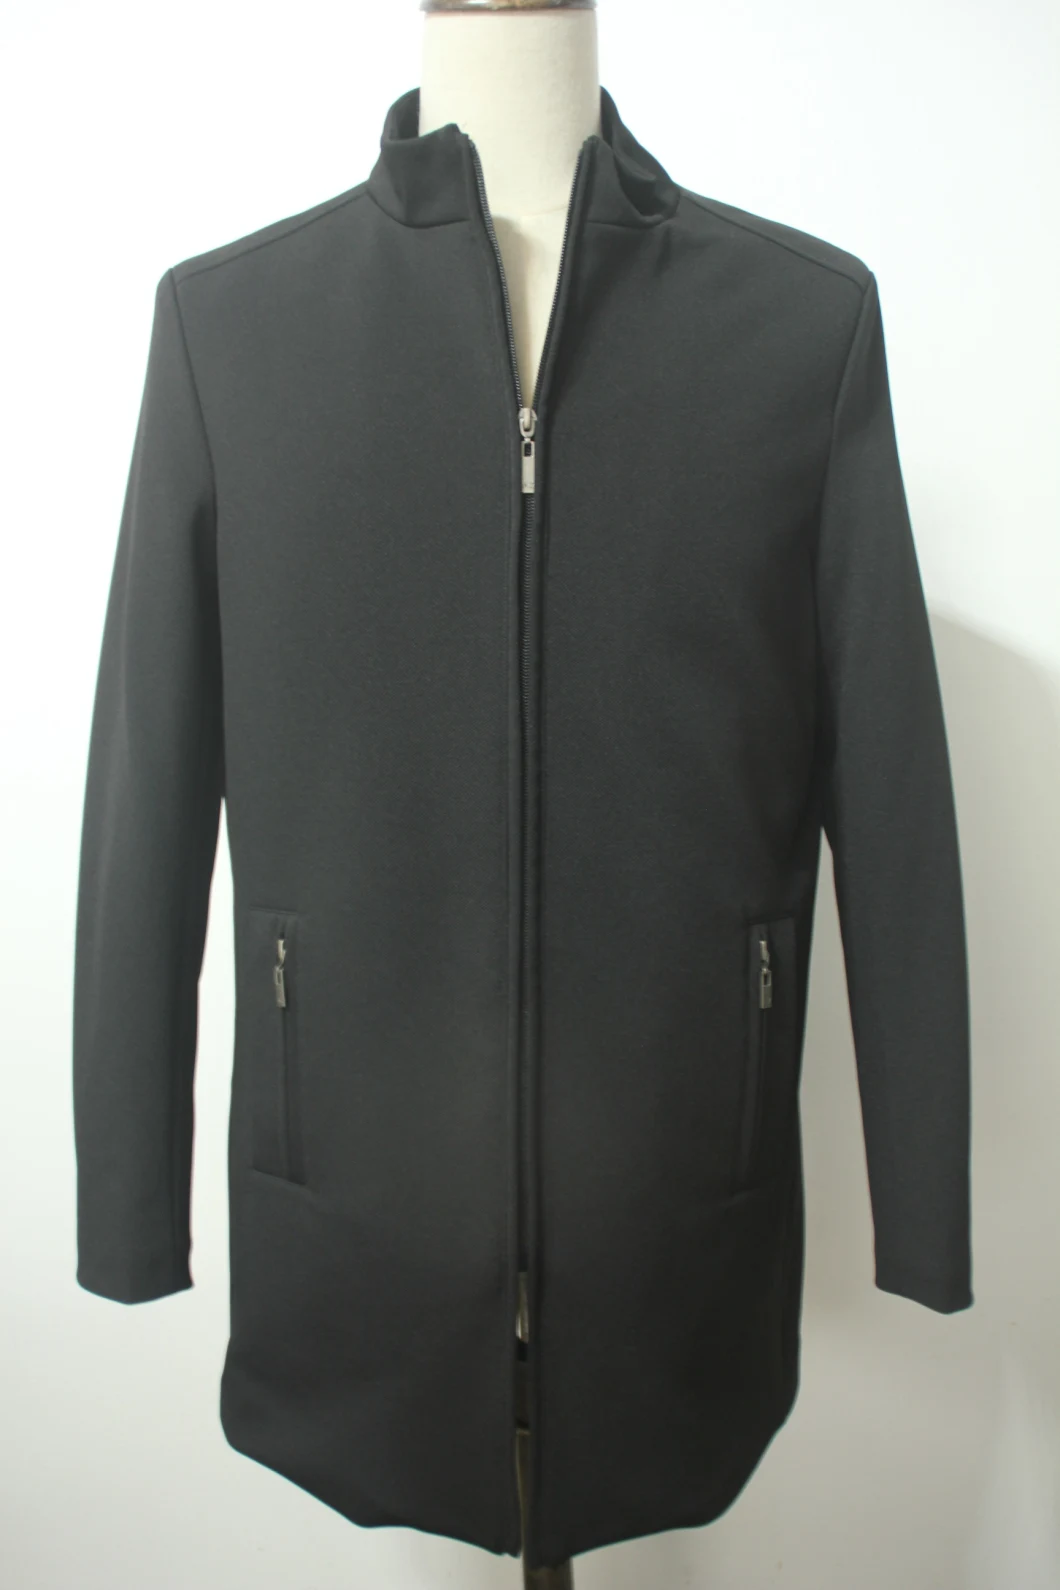 Men's Winter Long Overcoat Trench Coat Funnel Neck Coat Zipper Jacket